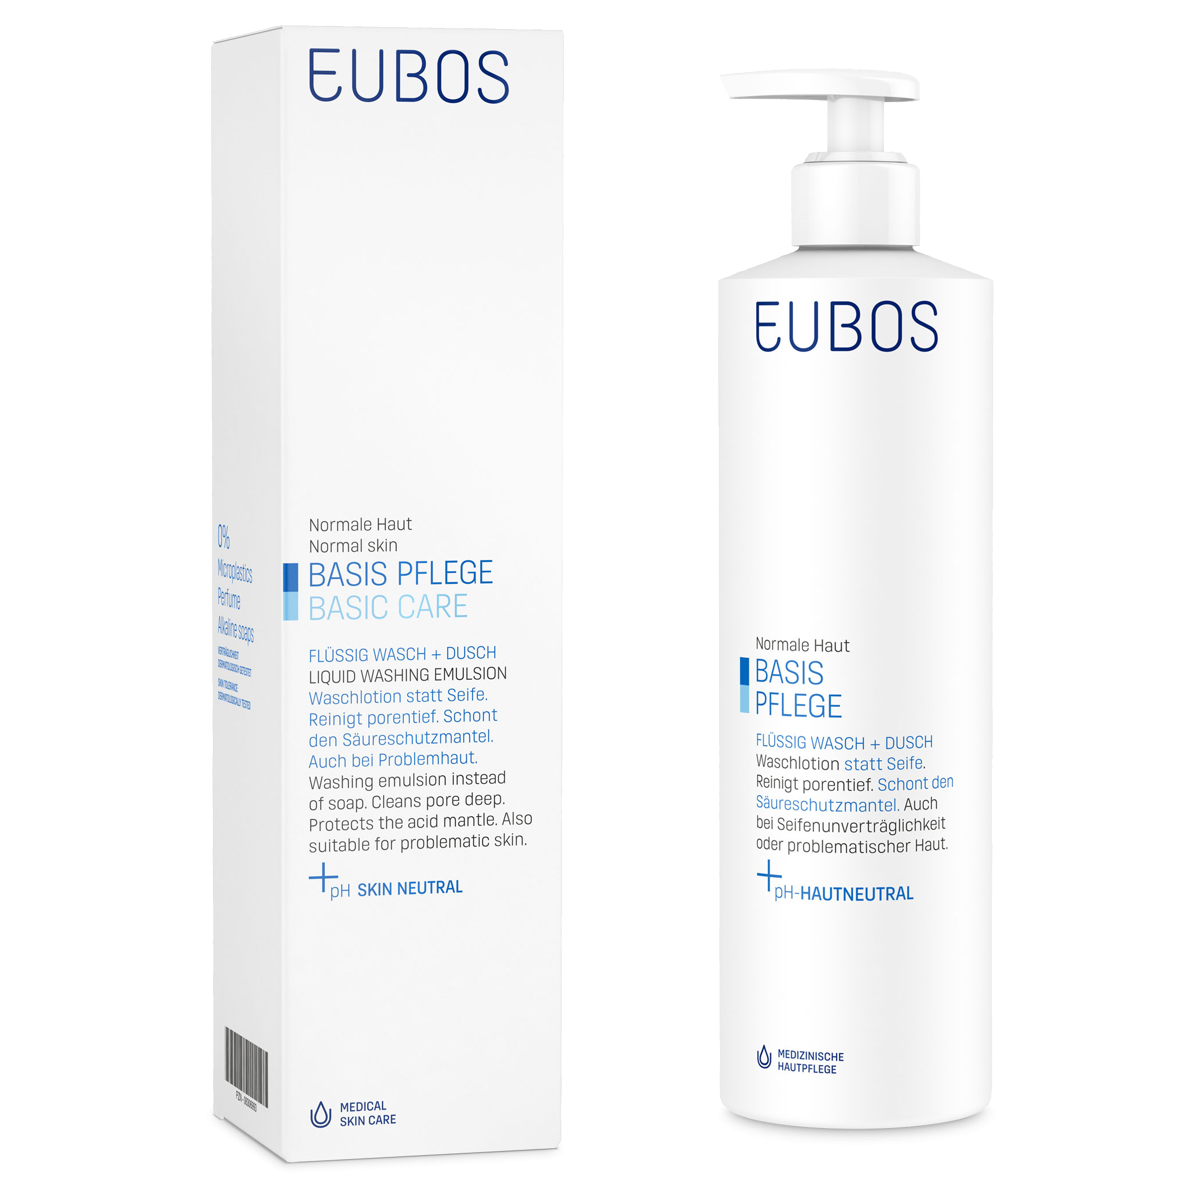 Eubos Seife liquid unparfümiert blau Dosierspender 400 ml